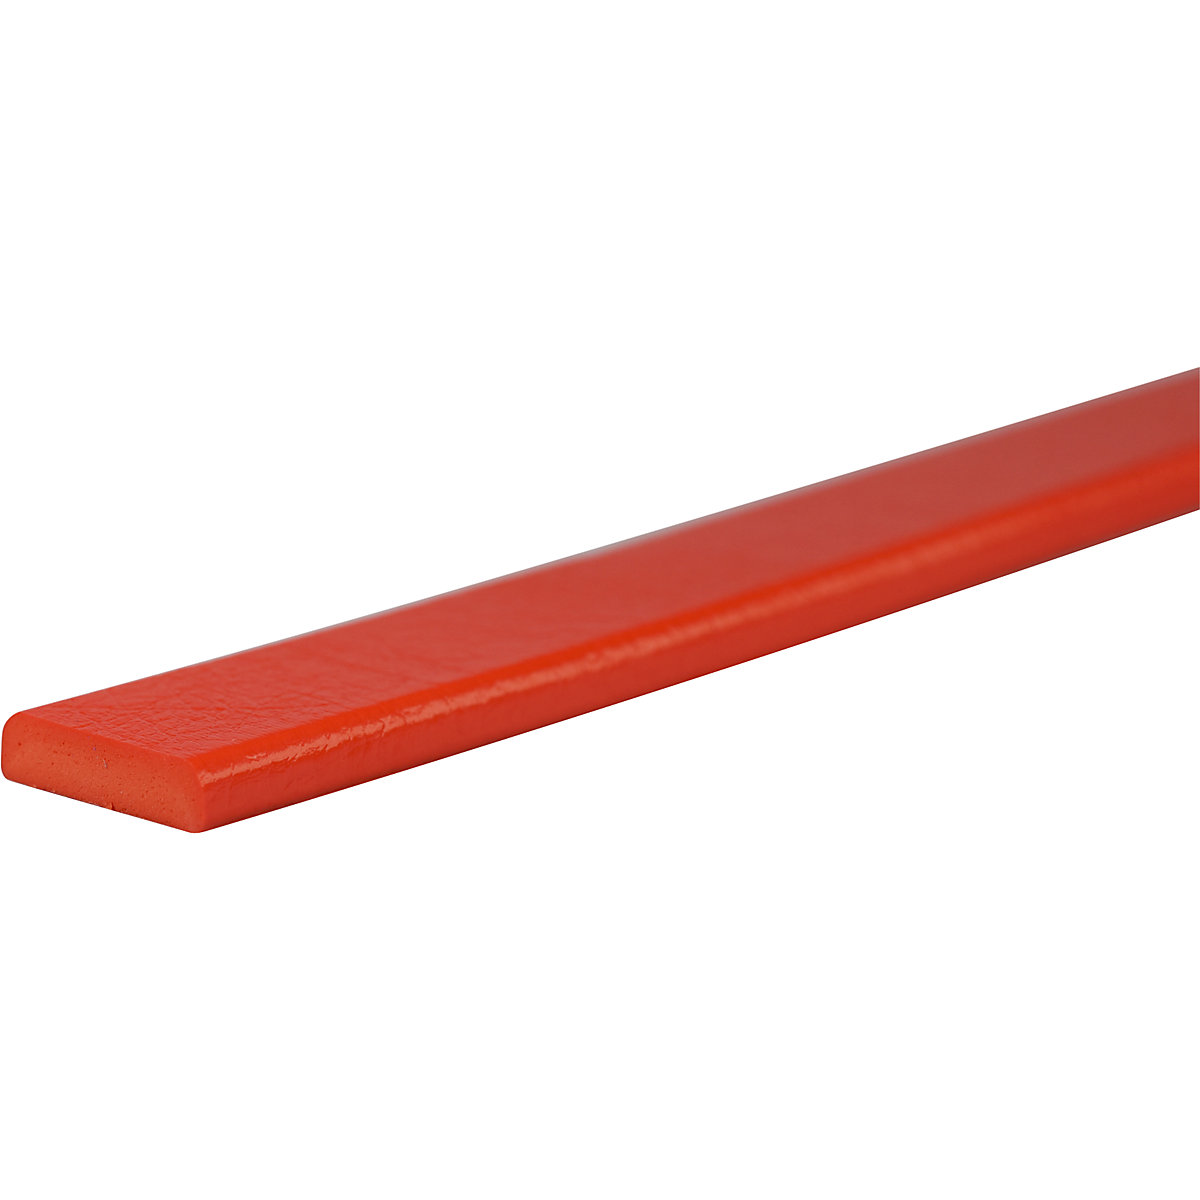 Zaščita površin Knuffi® – SHG, tip F, kos 1 m, rdeče barve-26